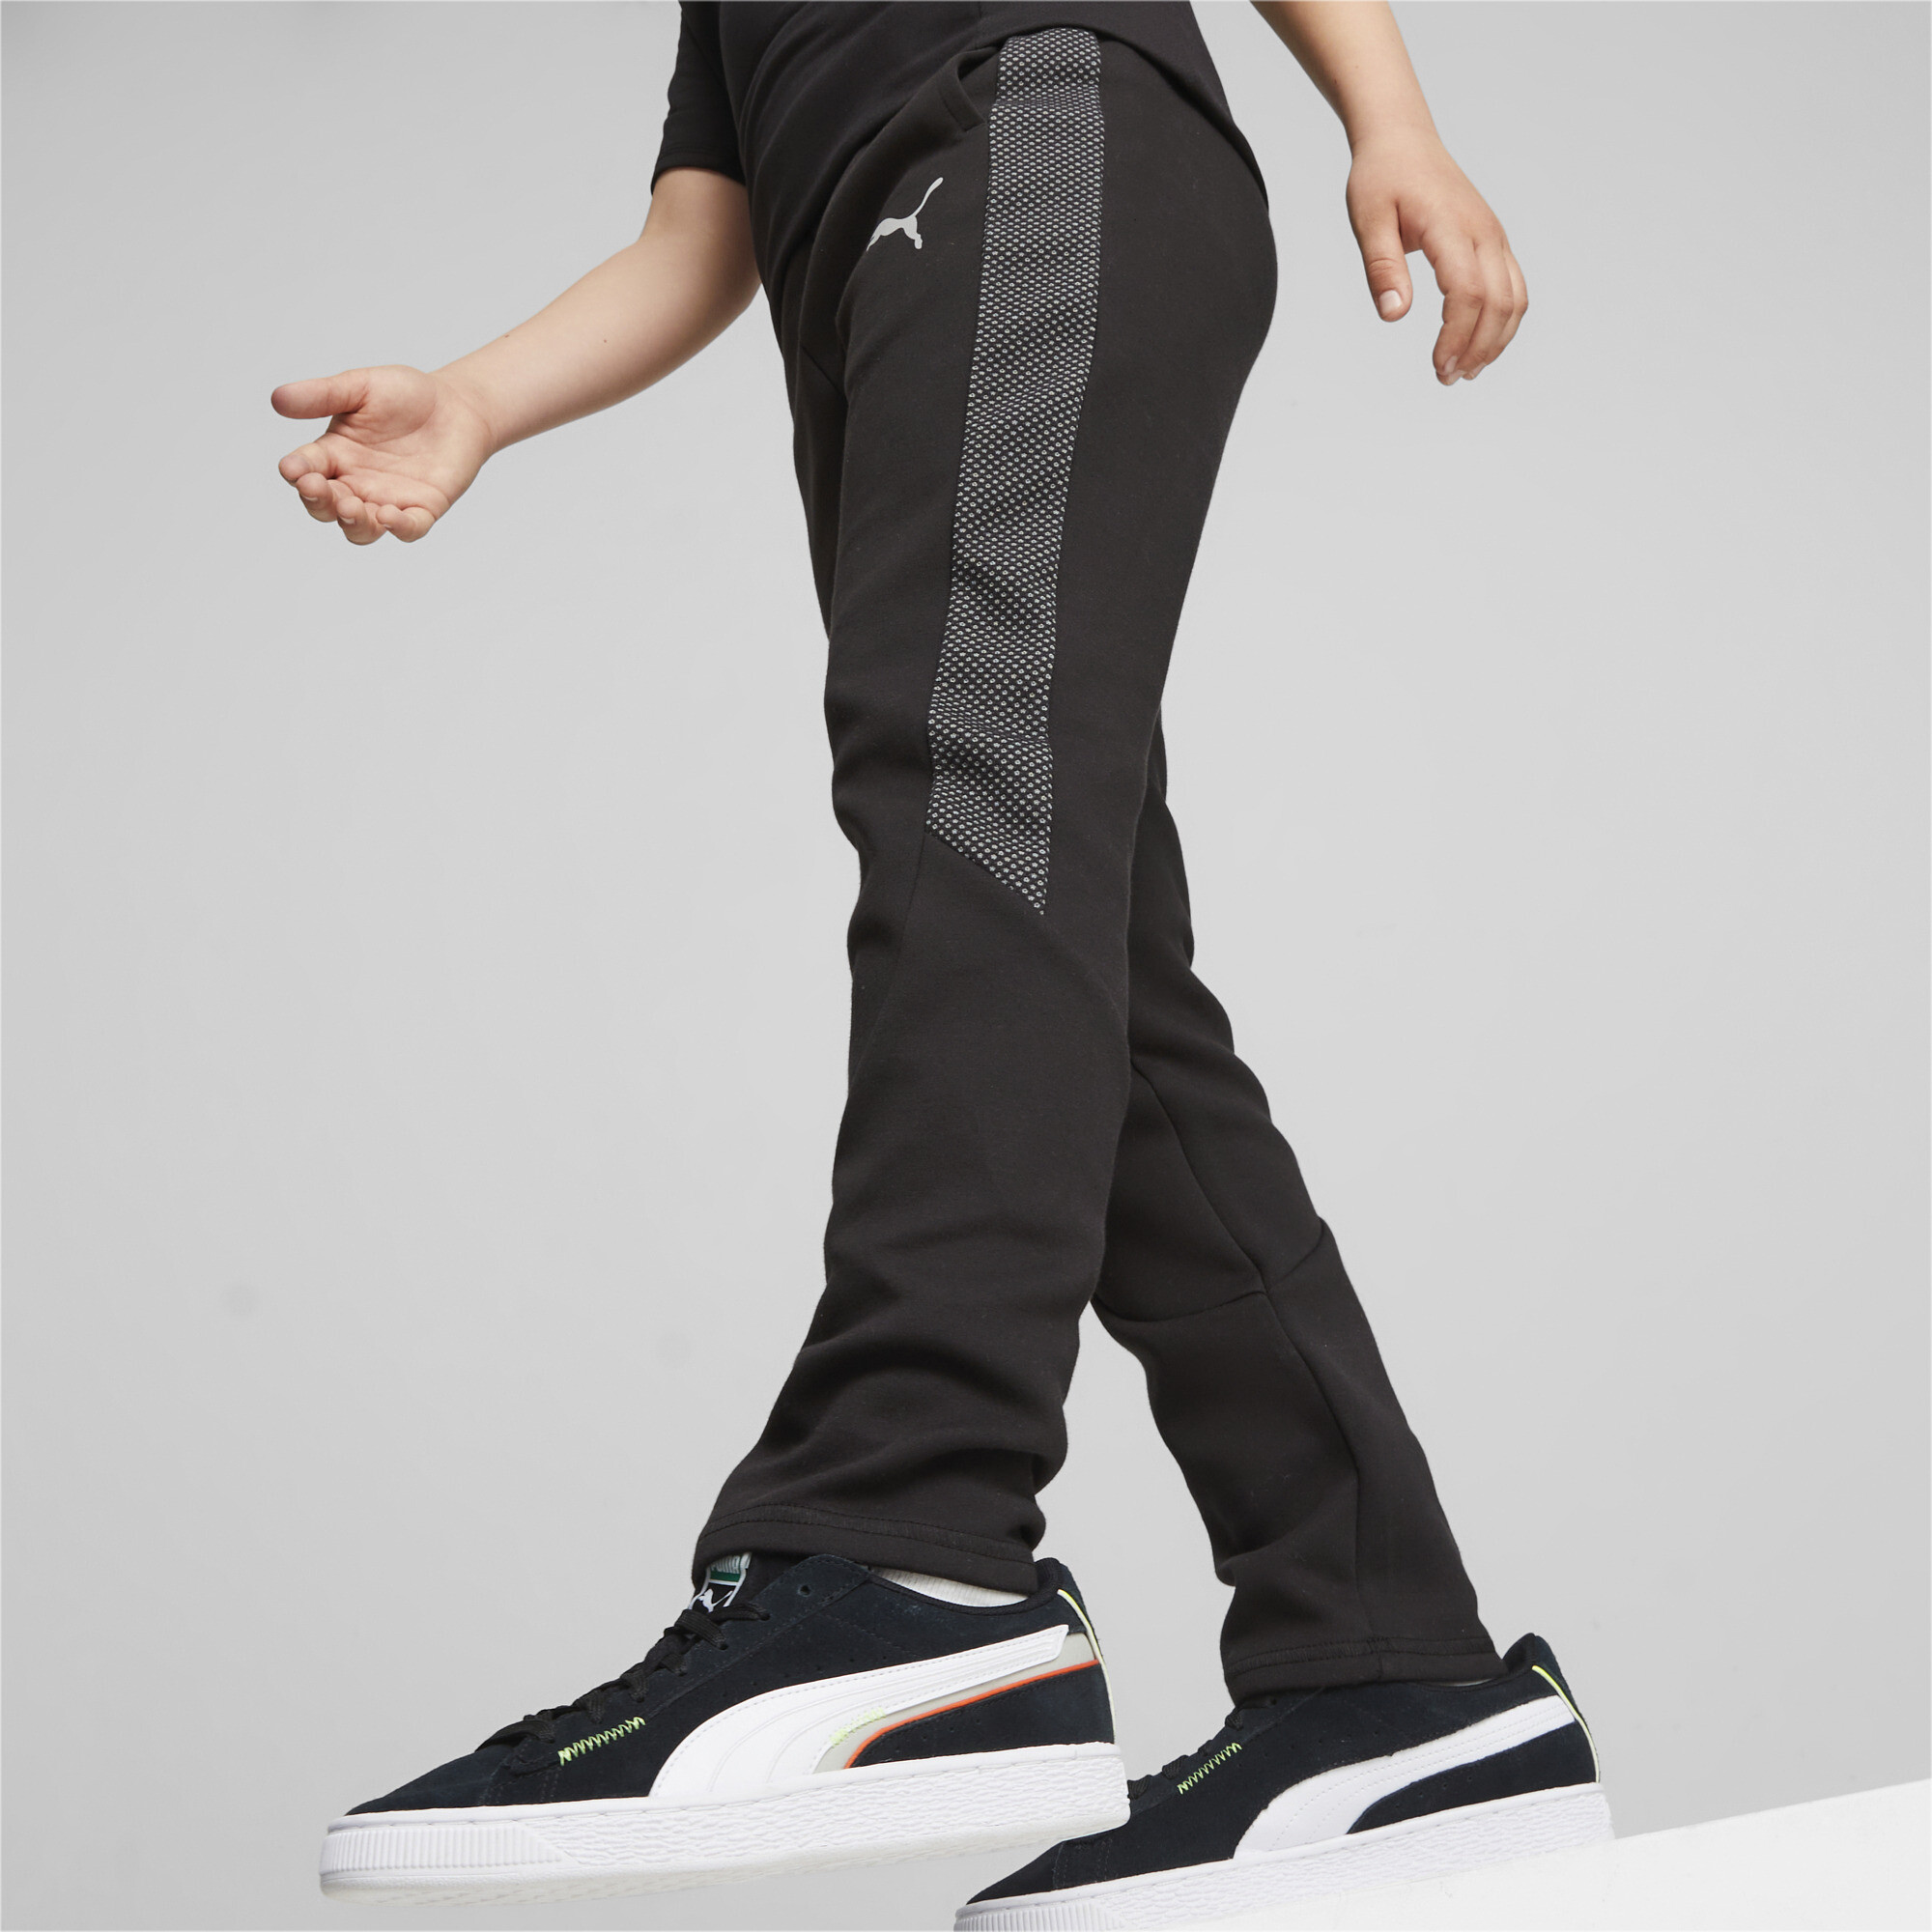 PUMA Evostripe Sweatpants In Black, Size 15-16 Youth